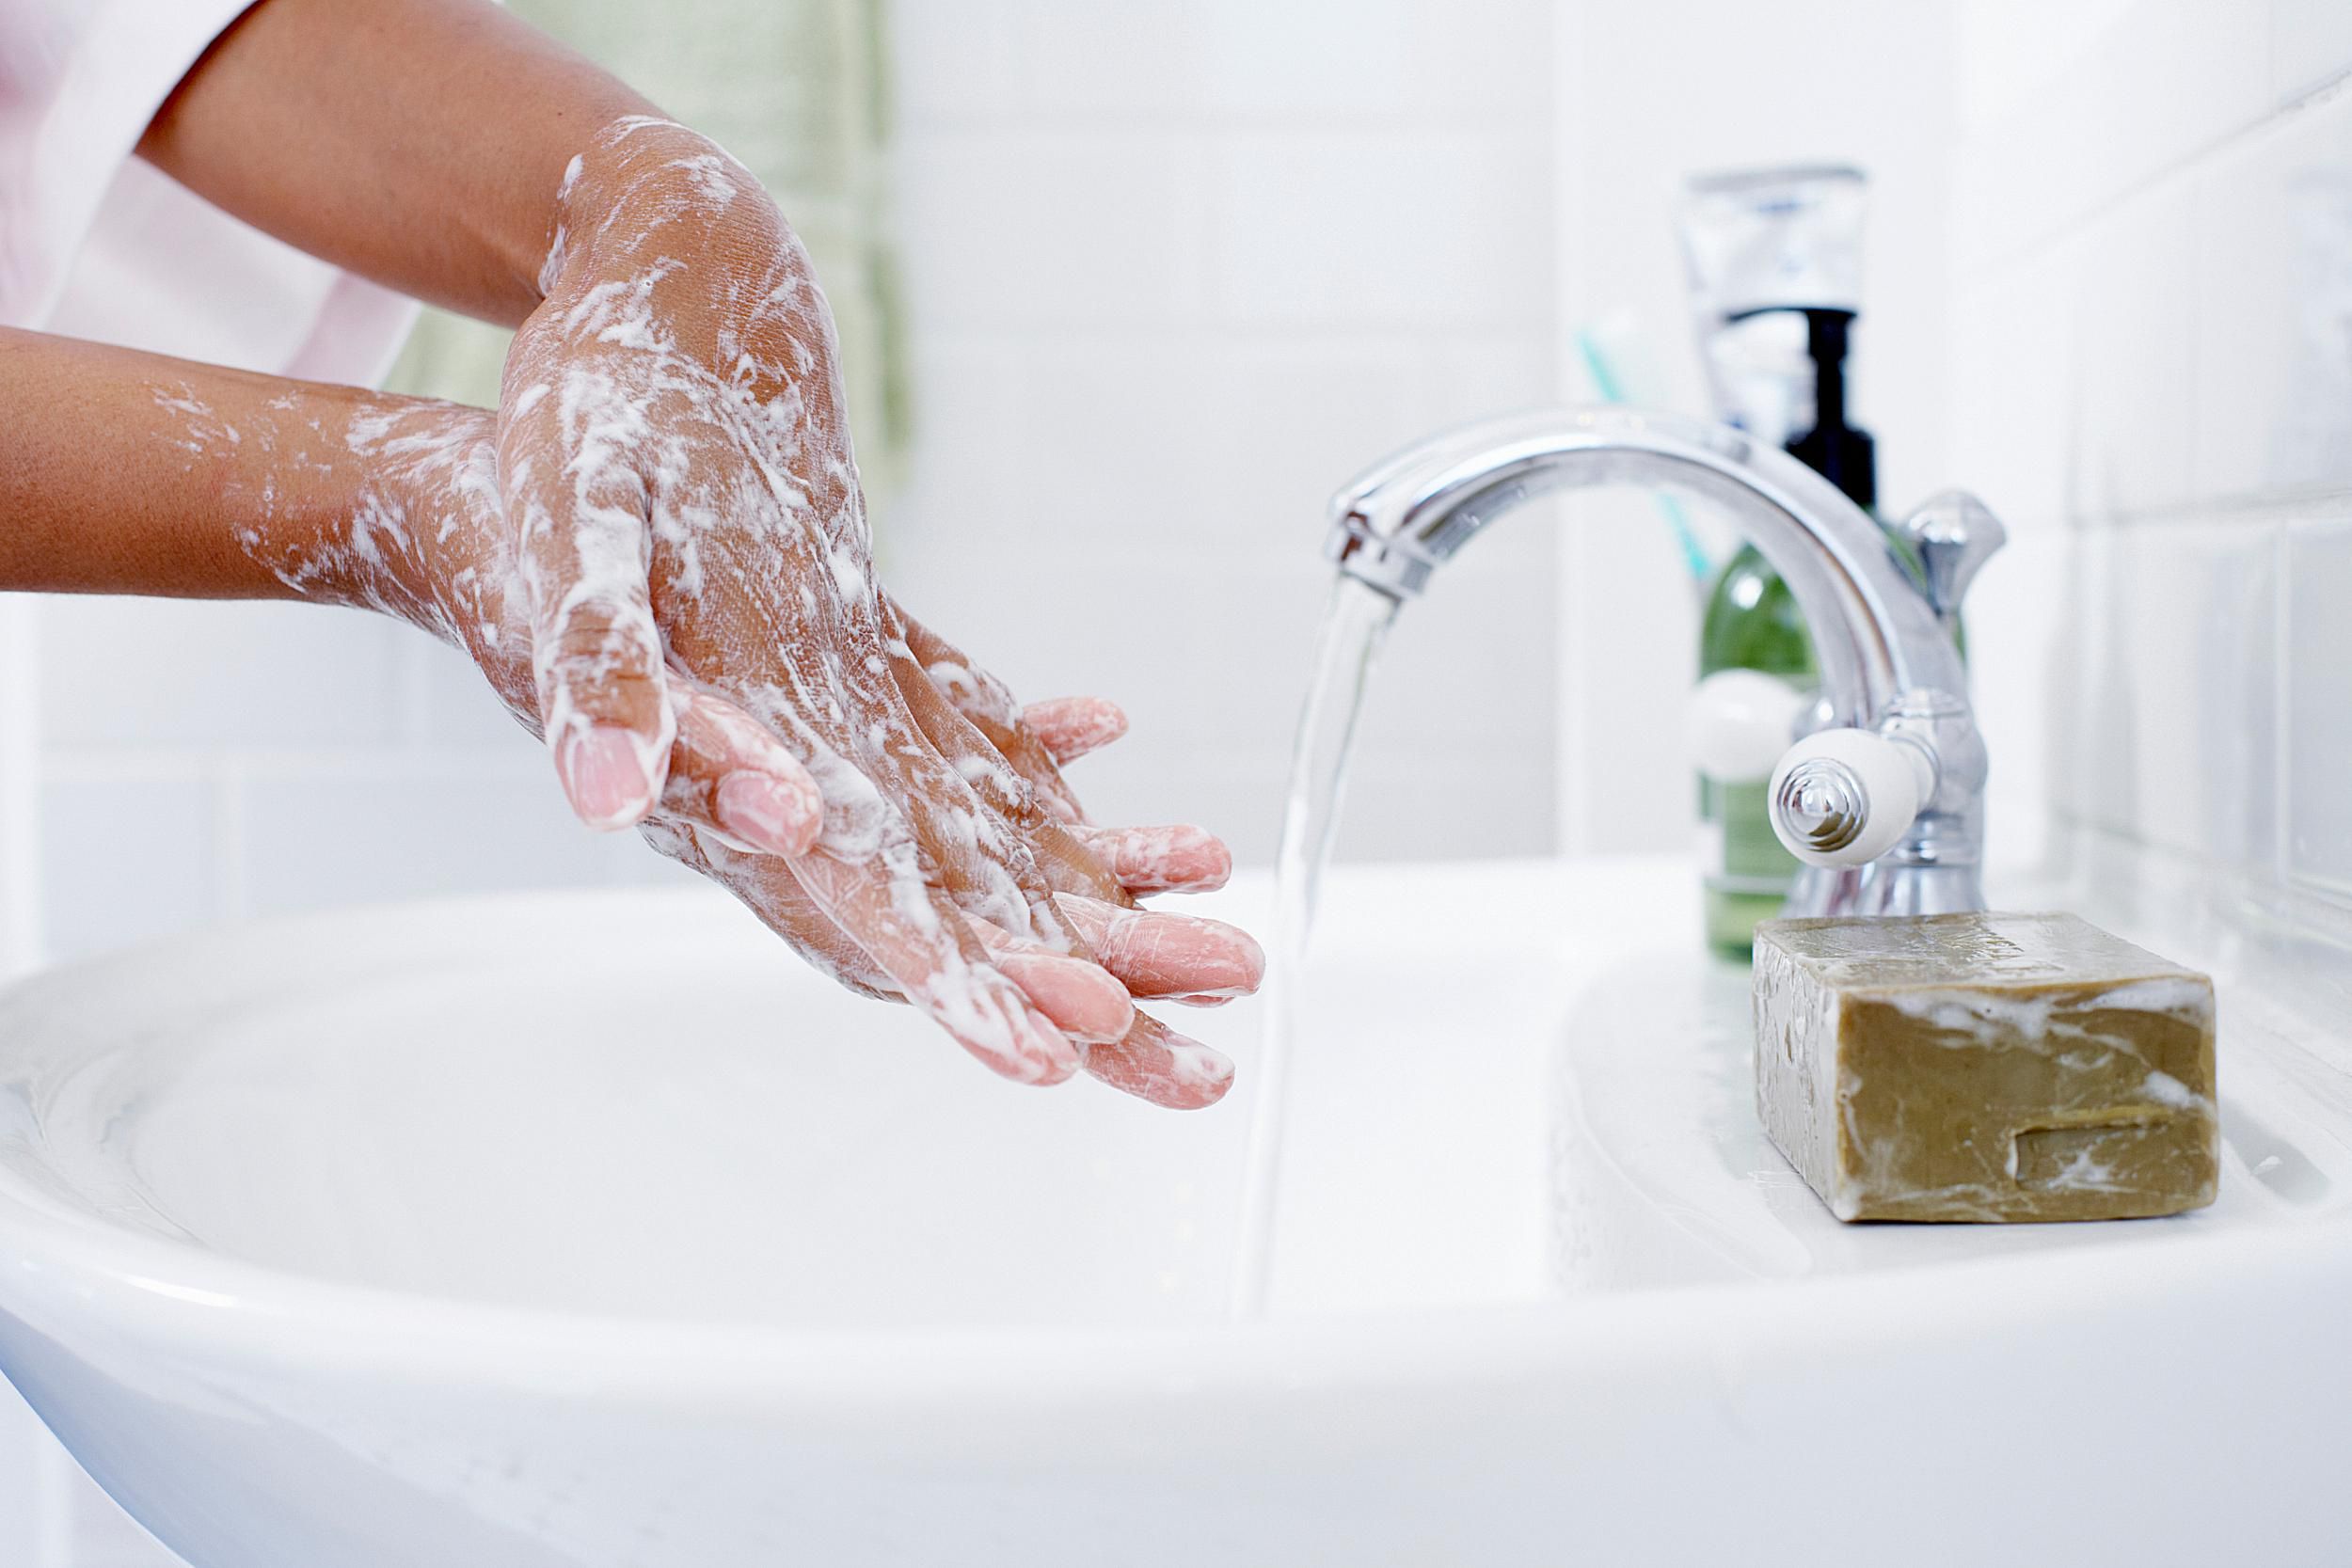 अविवाहित महिलाओं के लिए साबुन से हाथ धोने के सपने की व्याख्या